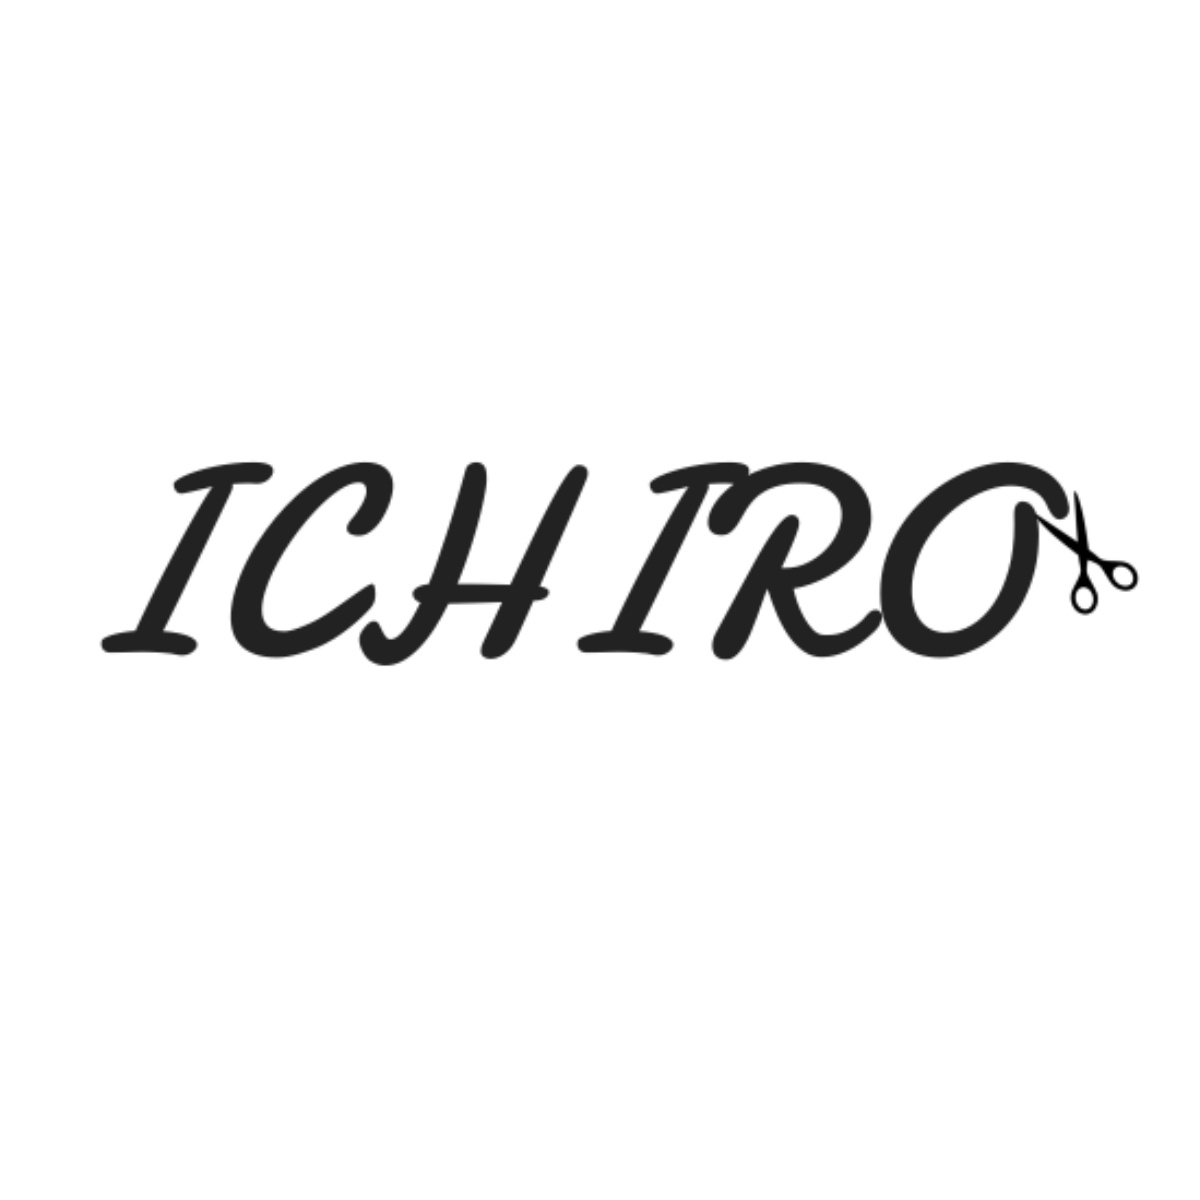 Ichiro Scissors logo